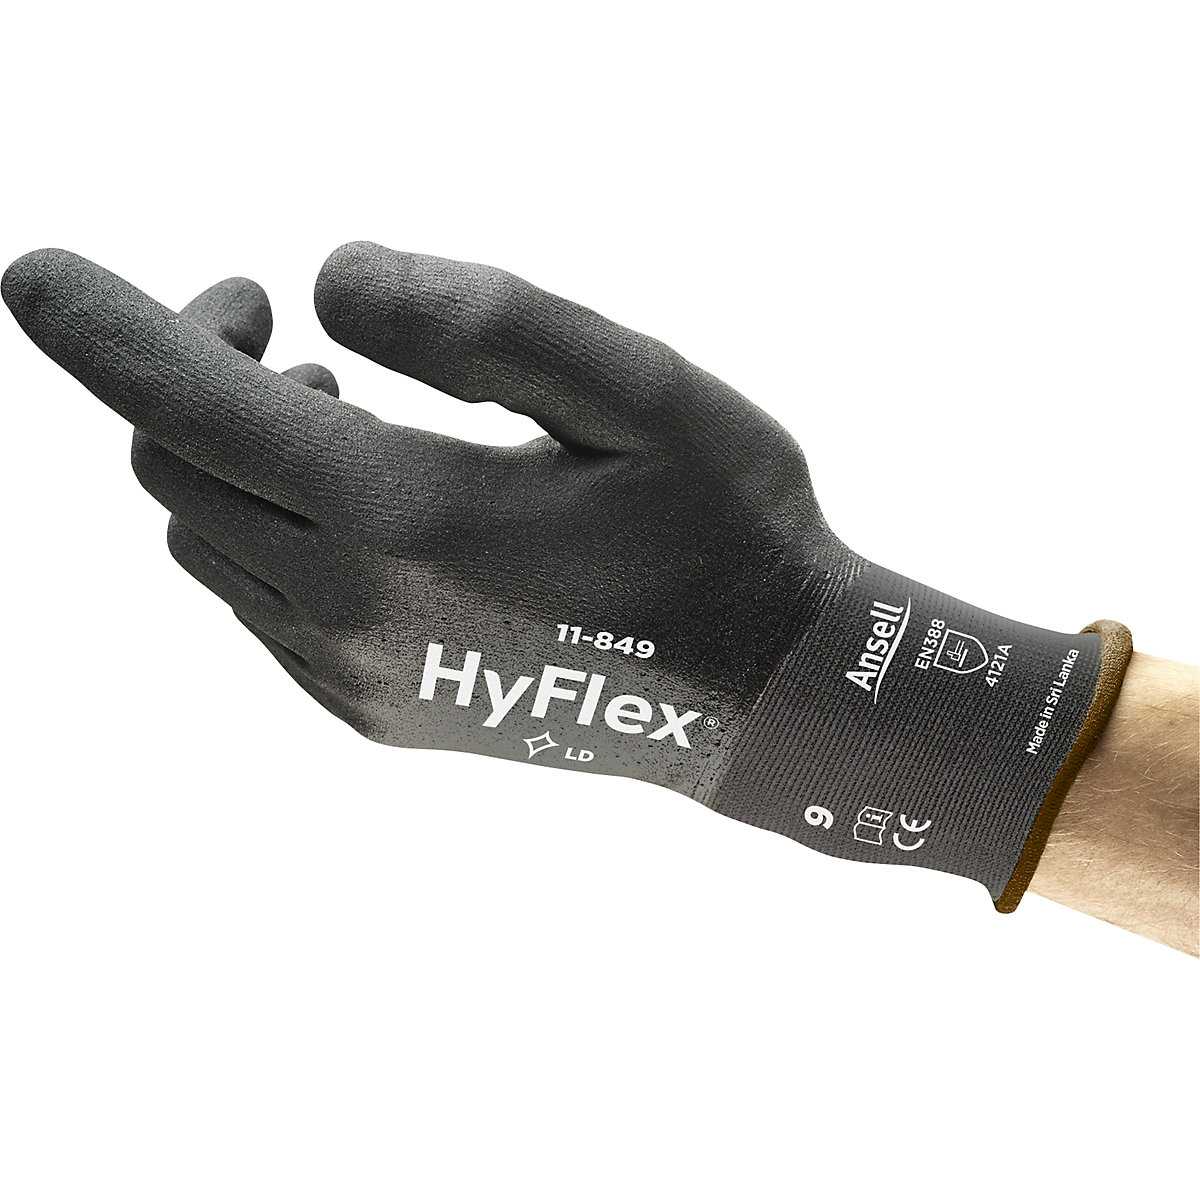 Mănușă de lucru HyFlex® 11-849 – Ansell (Imagine produs 3)-2